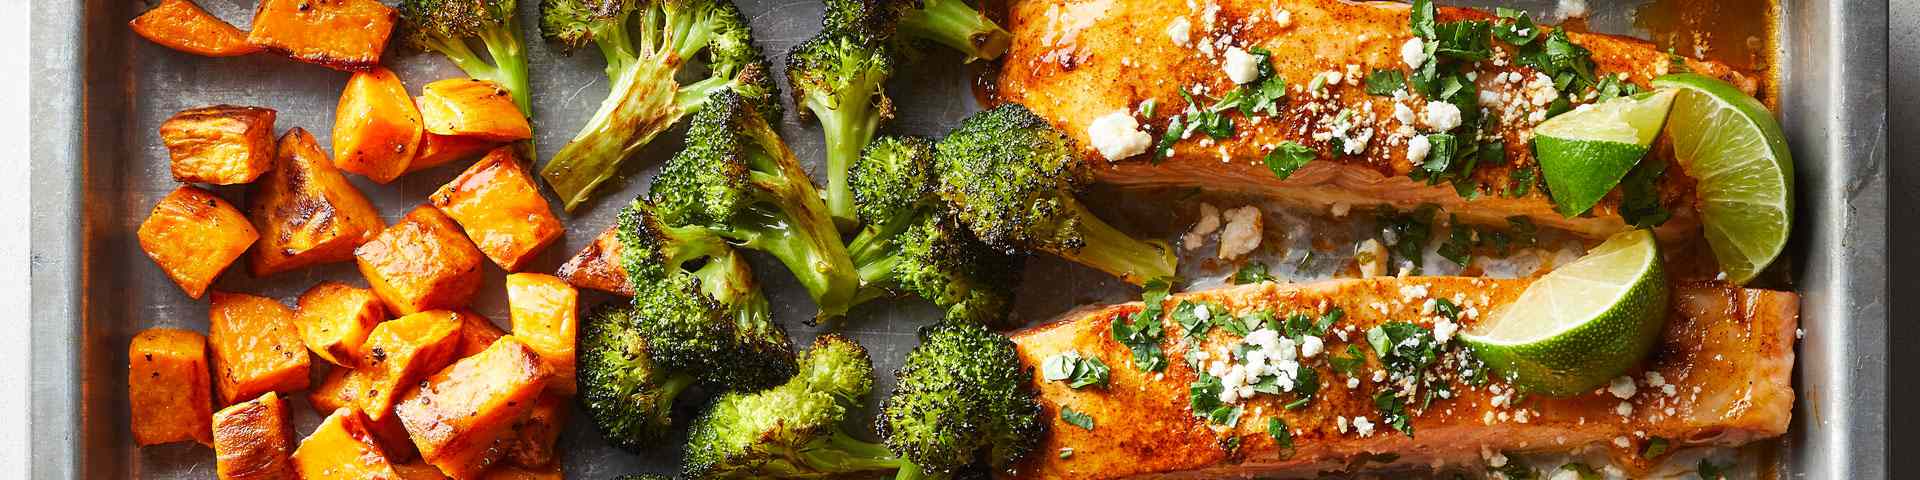 overhead shot of broccoli, sweet potato and salmon on a sheet-pan